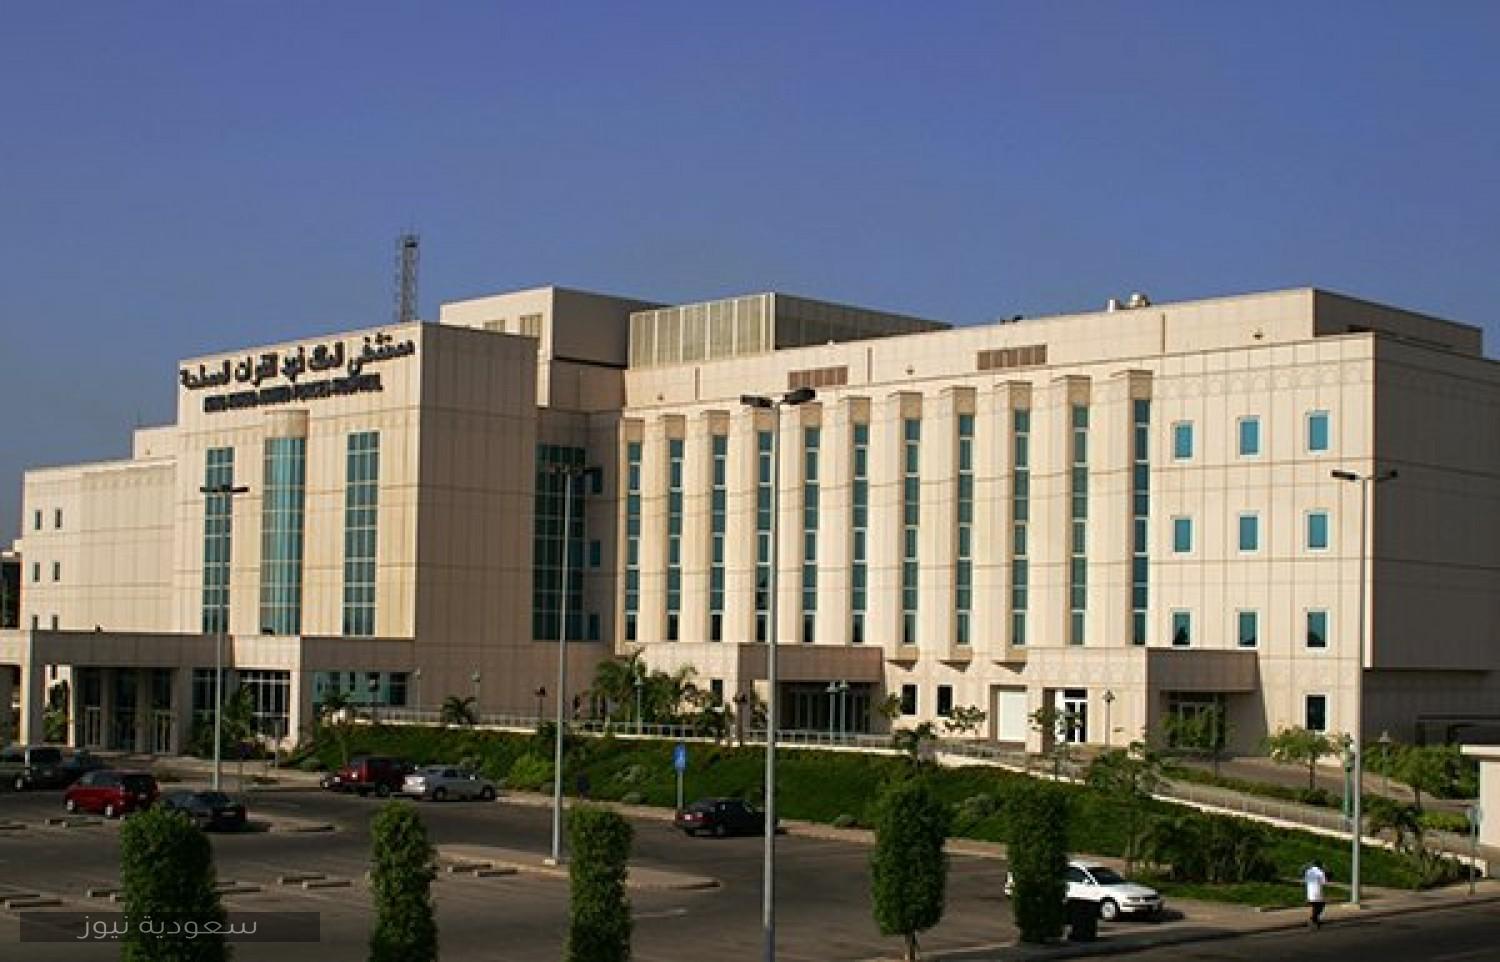 تسجيل الدخول إلى مستشفى الملك فهد للقوات المسلحة بجدة وتنزيل تطبيق أخبار السعودية